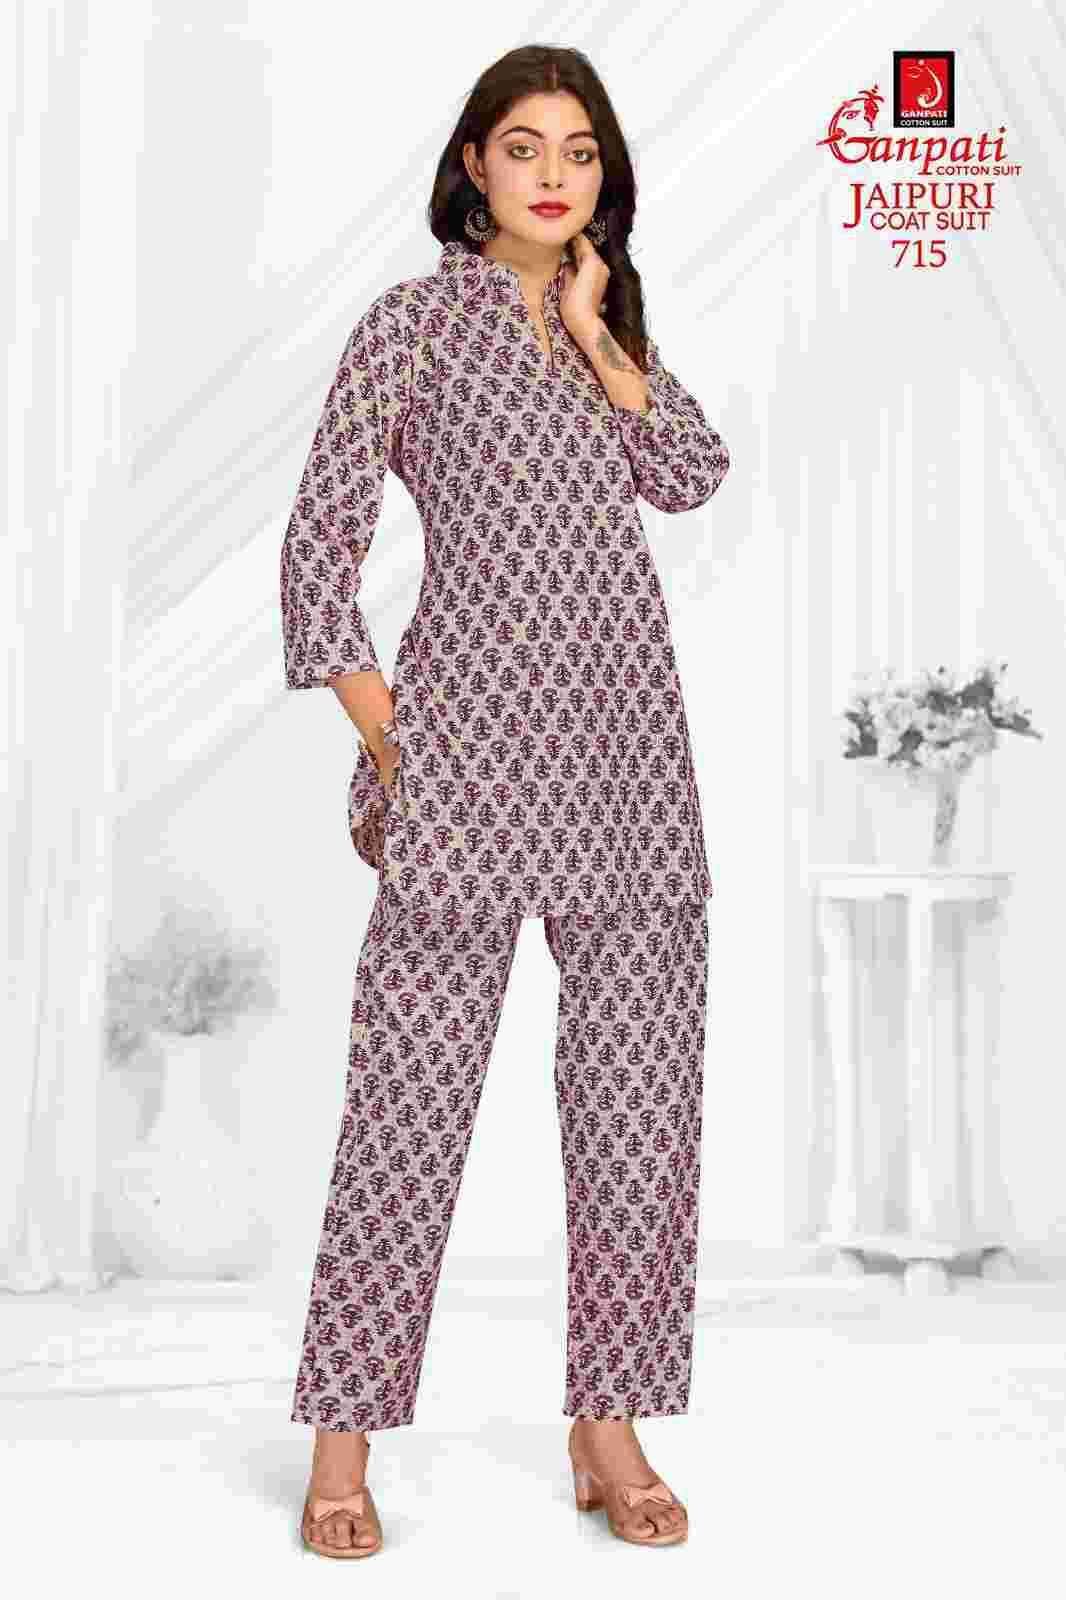 Ganpati Jaipuri Coat Suit Vol 7 Designer Co-Ord Set For Women Online In India ( 15 Pcs Catalog )